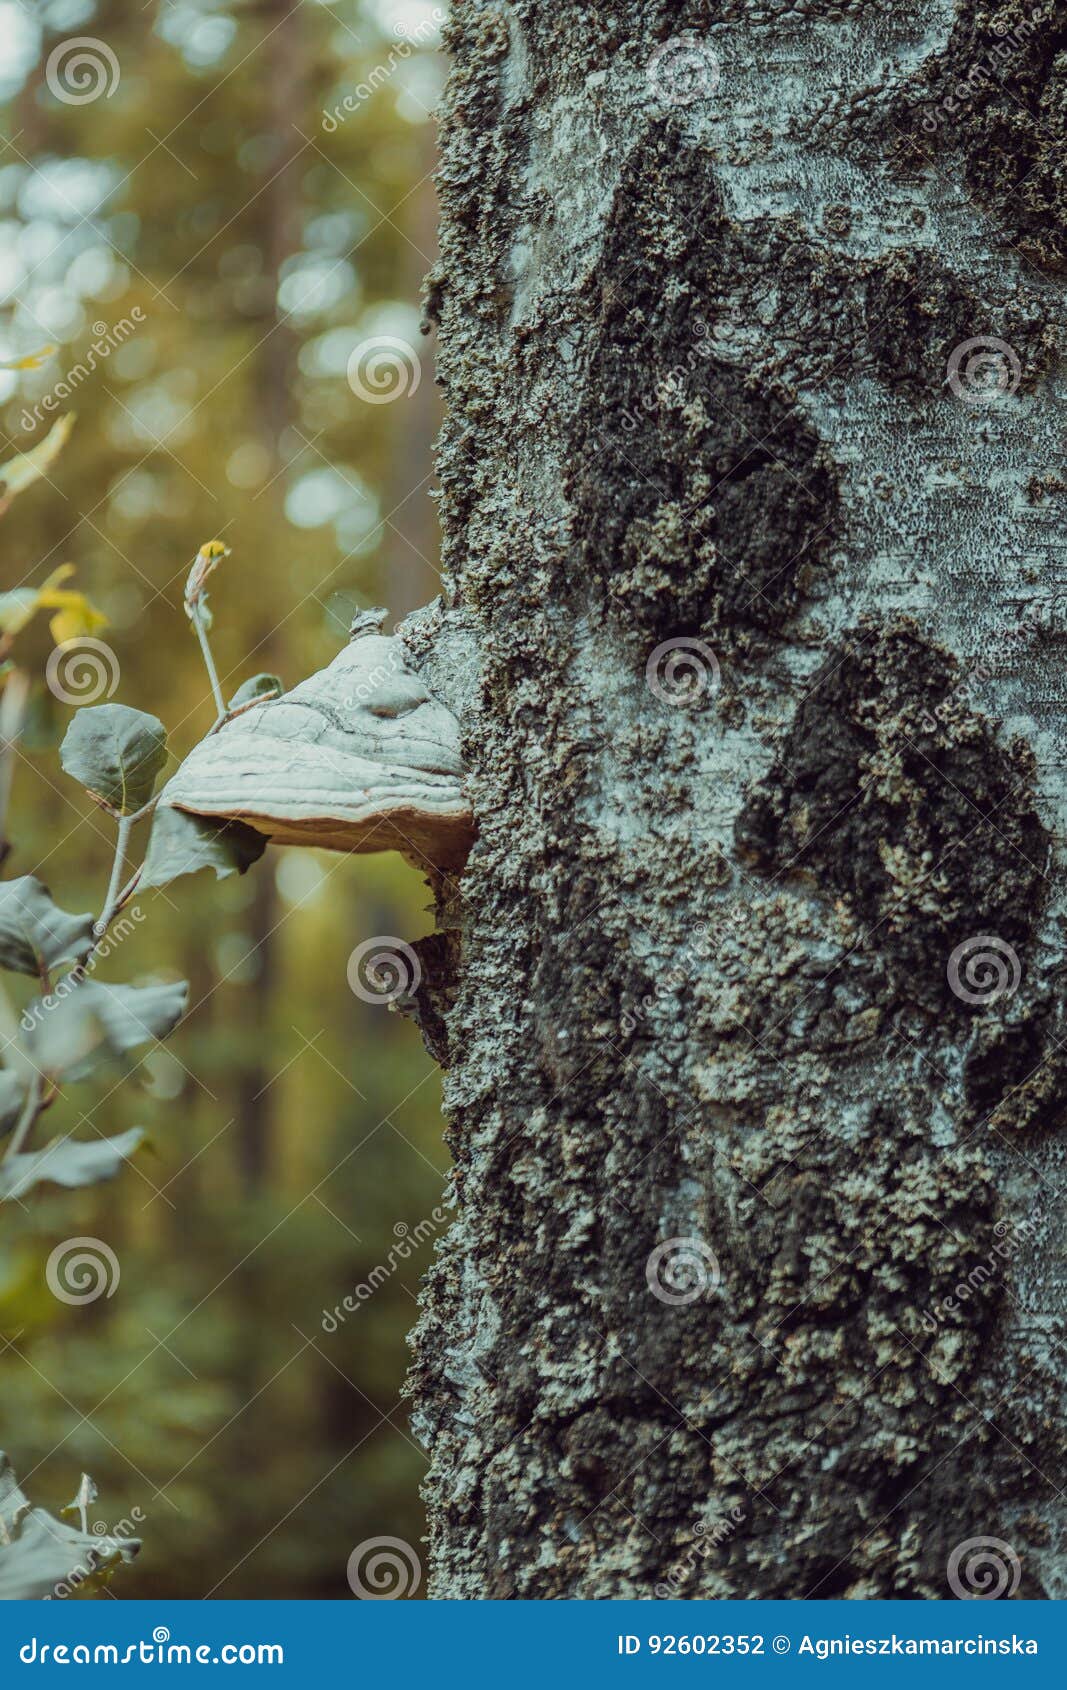 basidiomycota mushroom growing on the tree